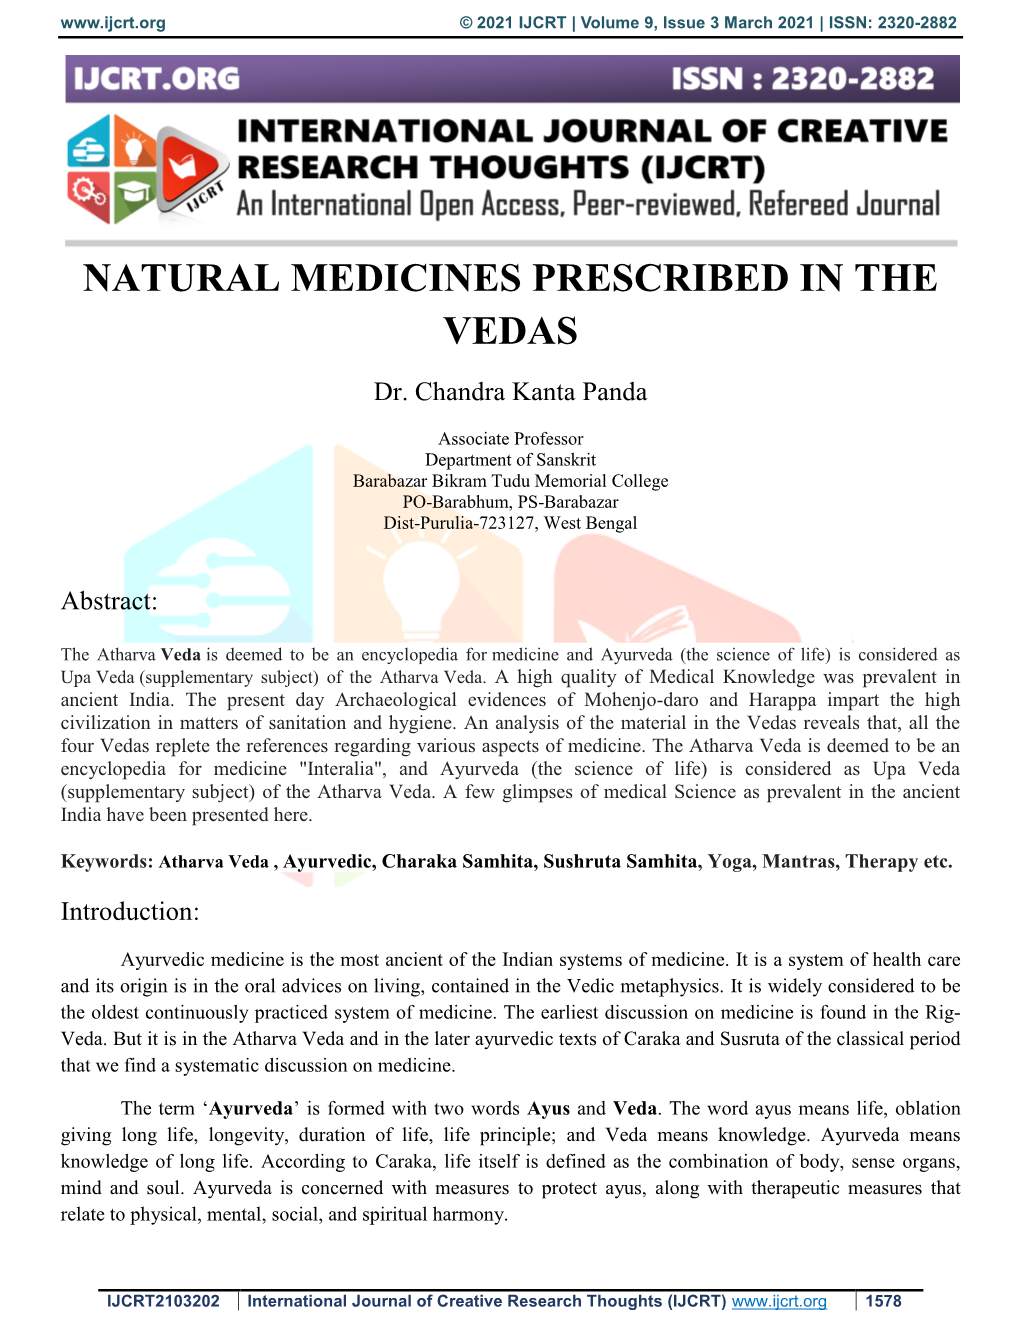 Natural Medicines Prescribed in the Vedas